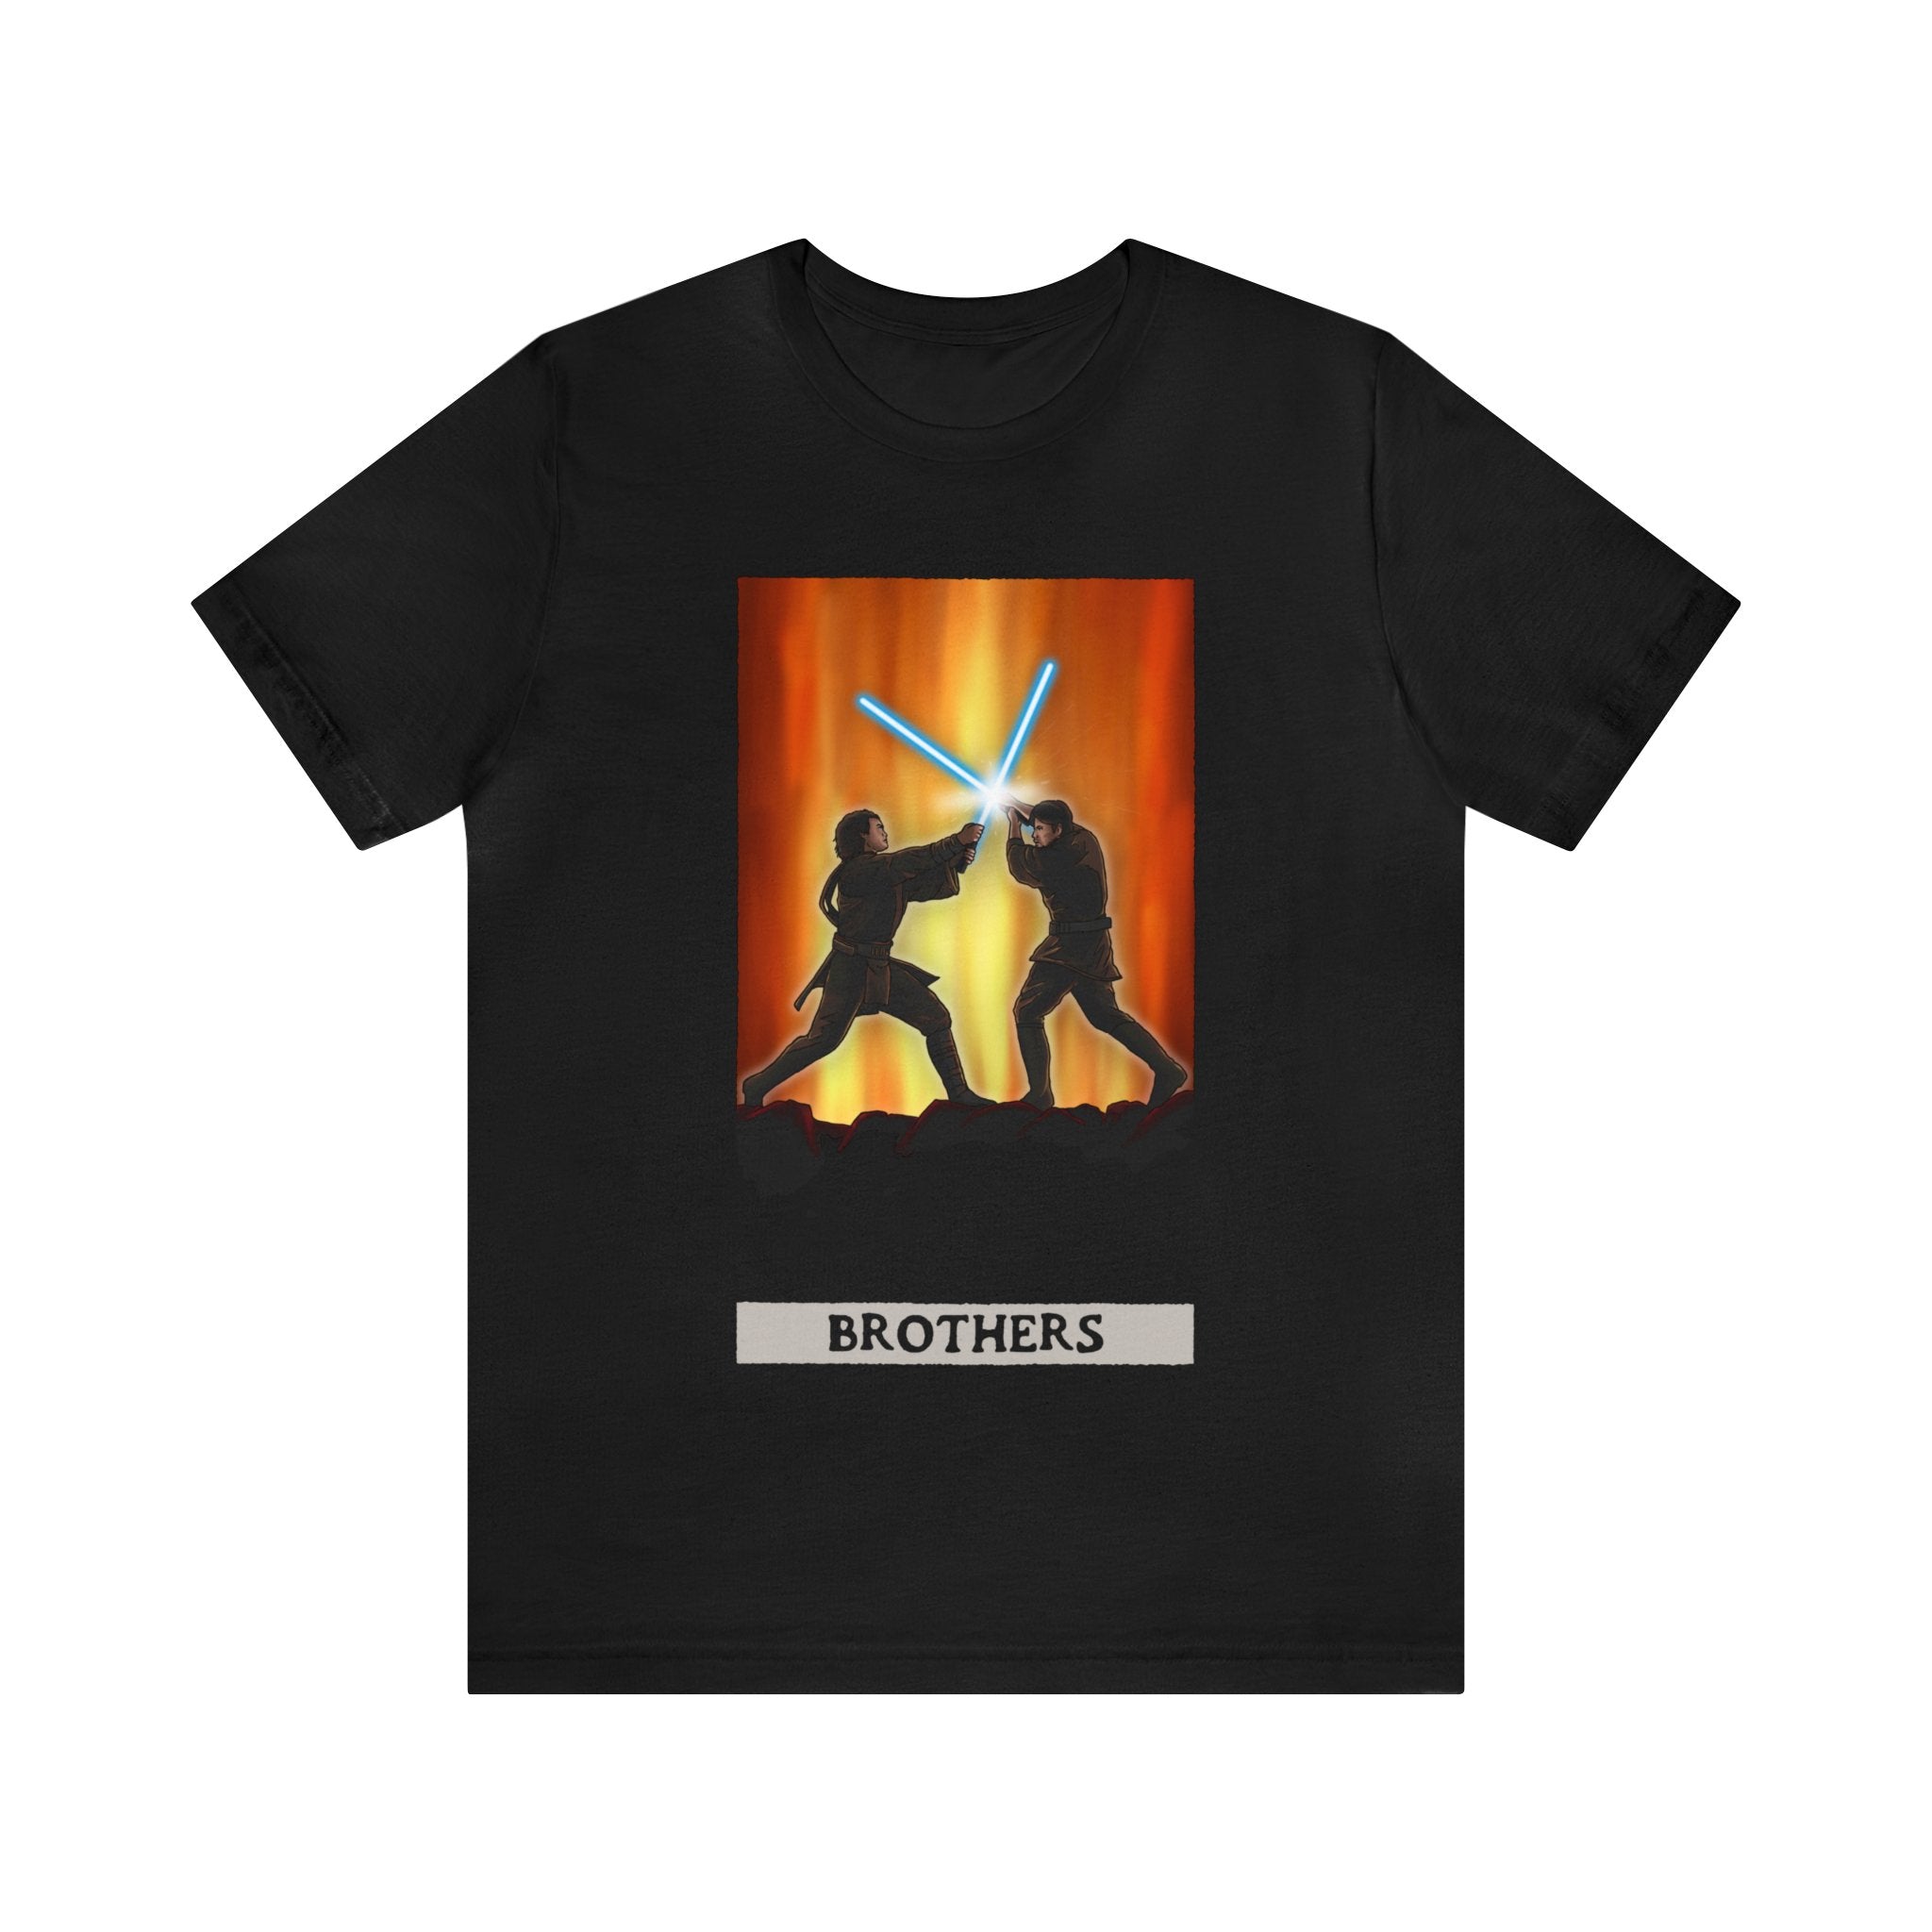 Anakin & Obi-Wan "Brothers" Tarot Card (T-shirt)